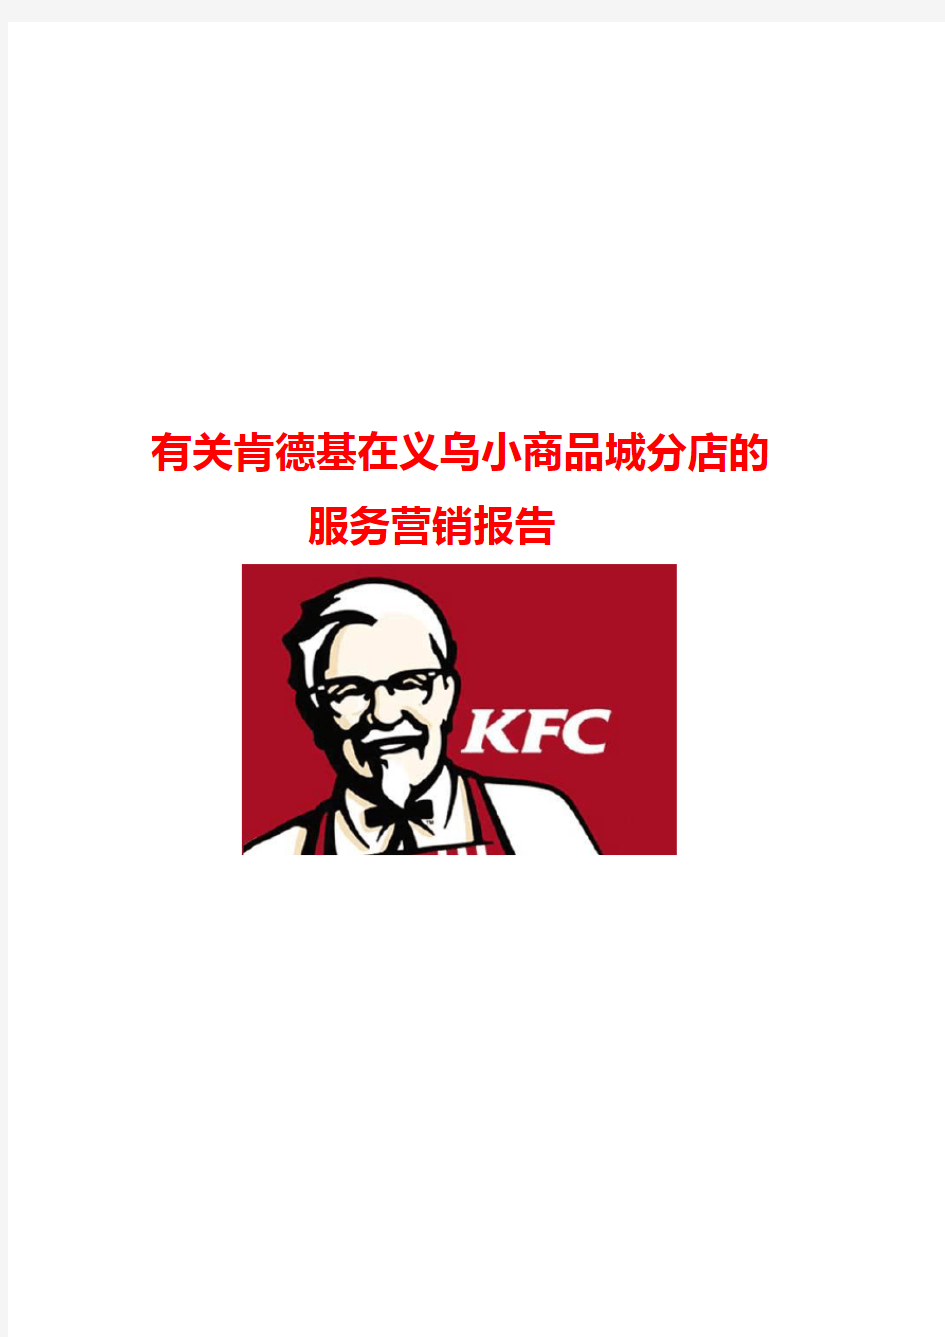 有关KFC服务